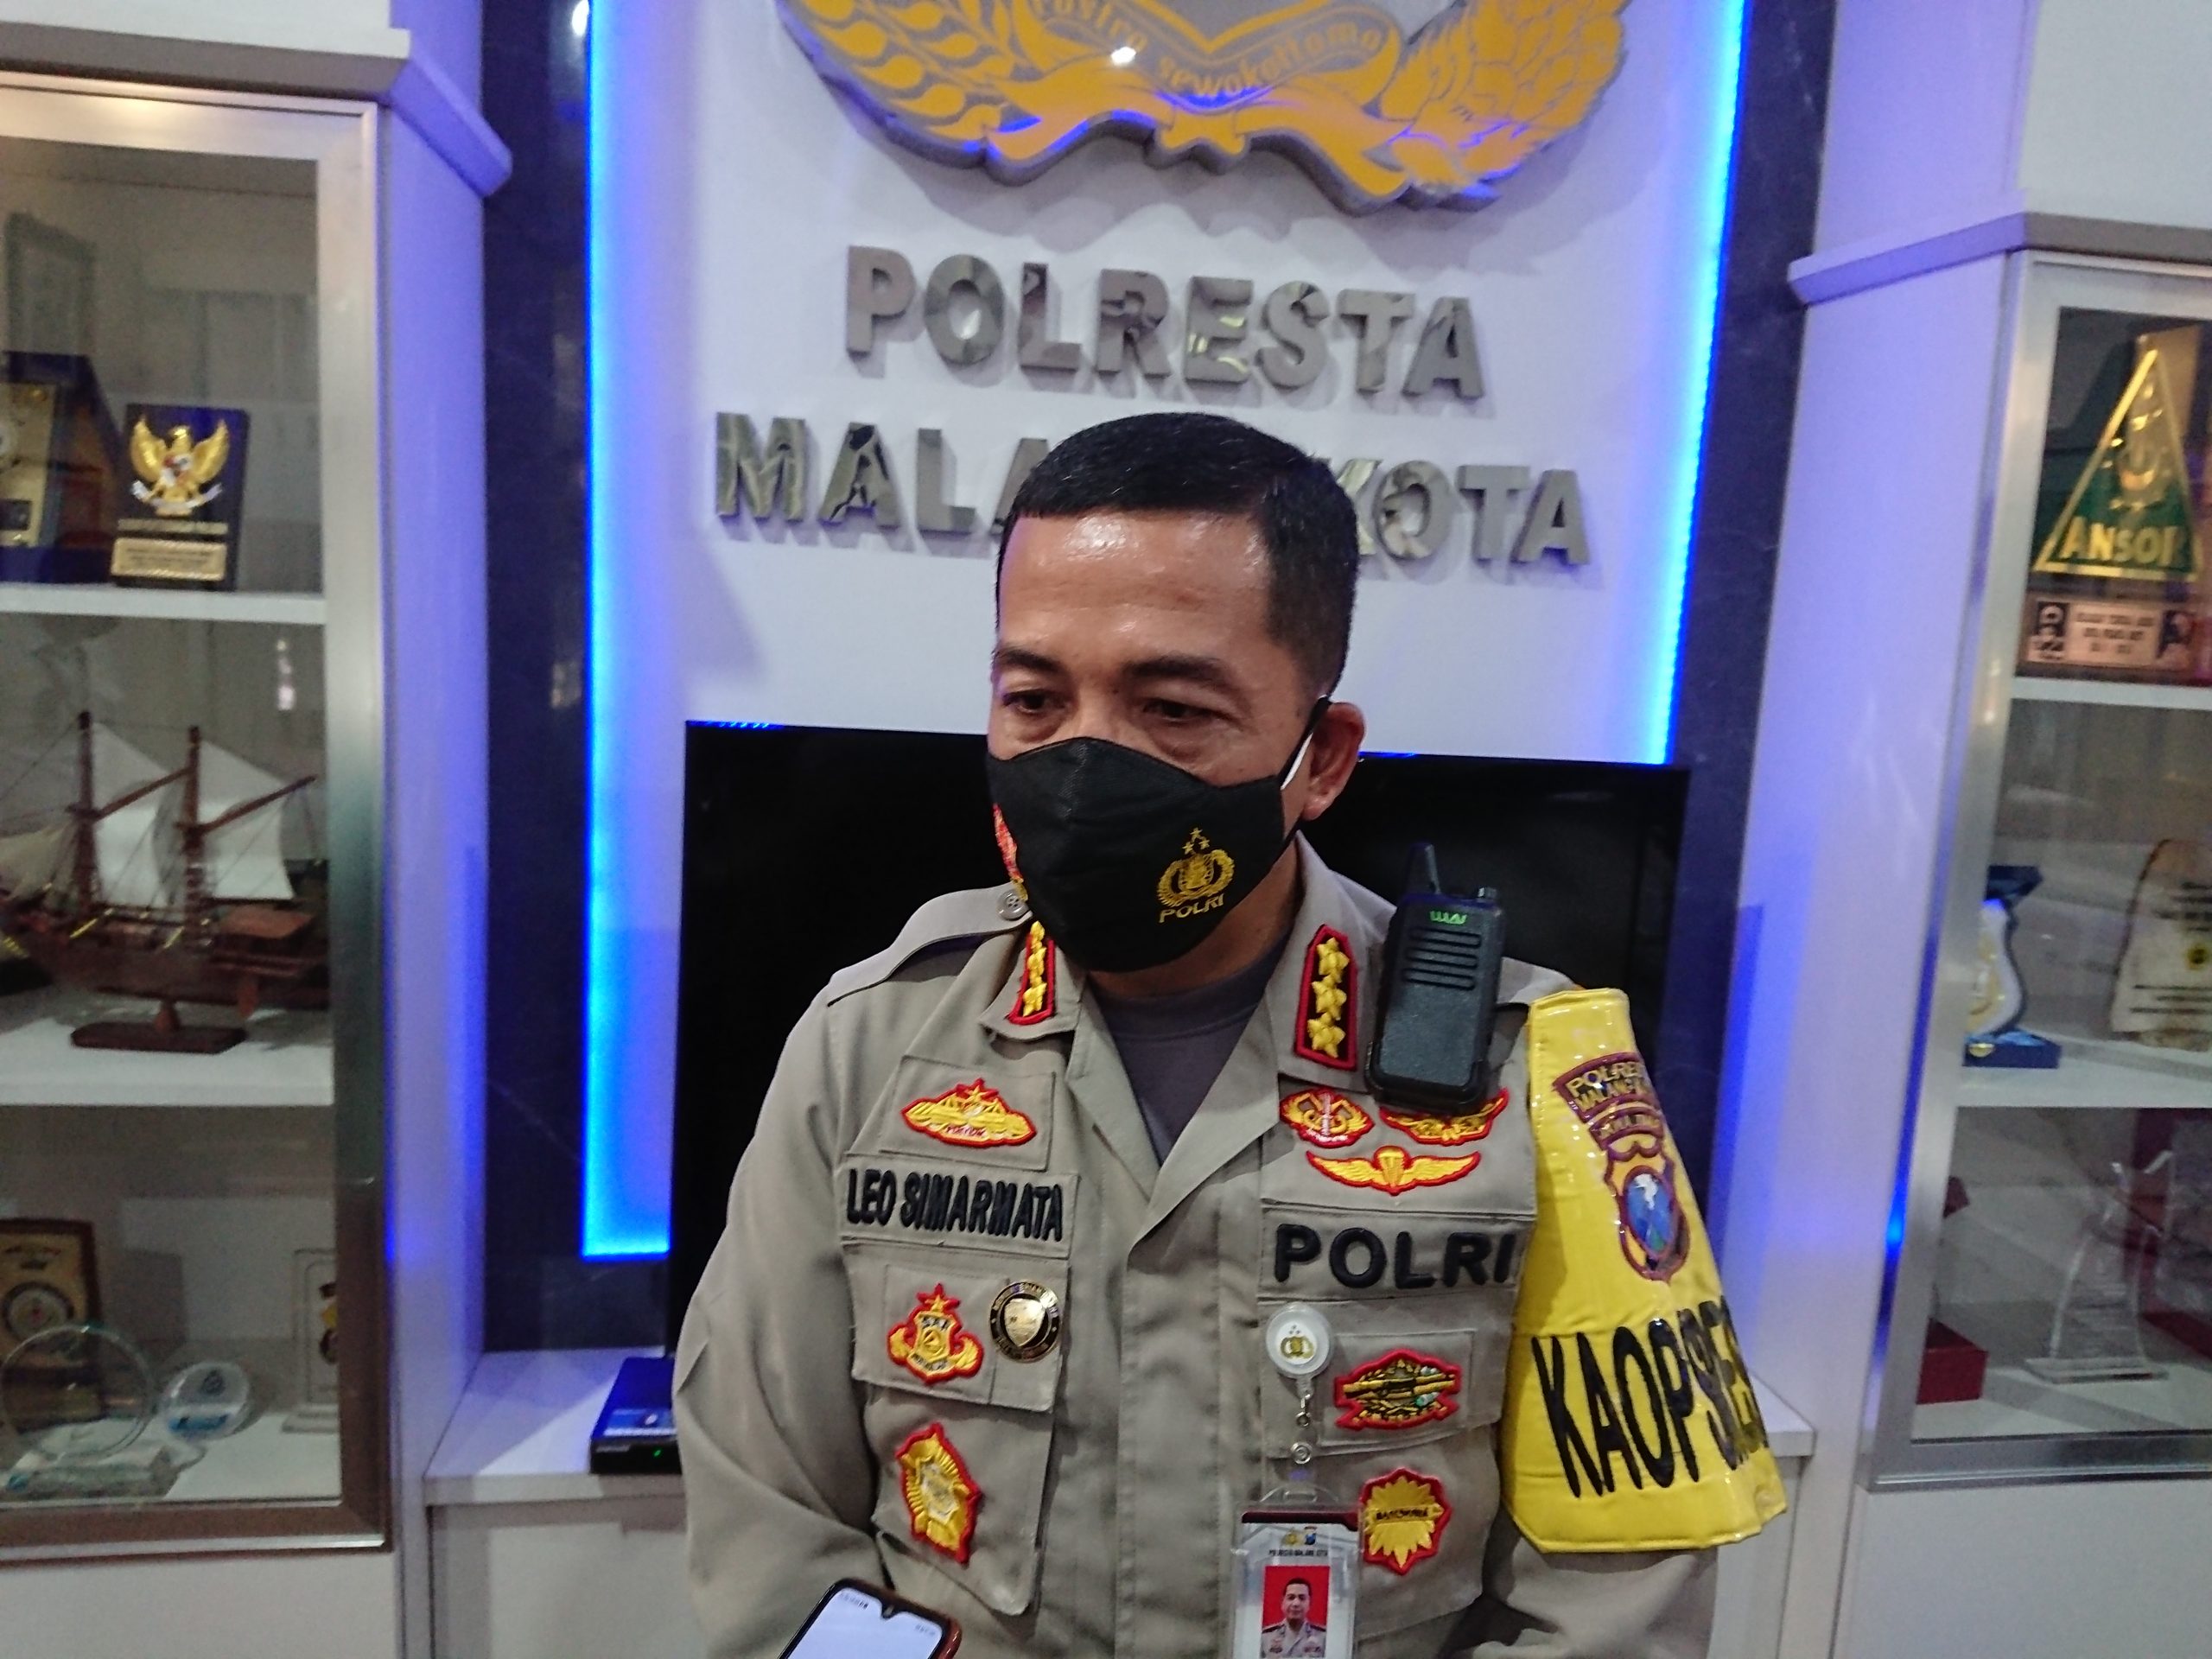 Polresta Malang Kota Komitmen Jaga Kualitas Pelayanan Tidak Berbelit-belit